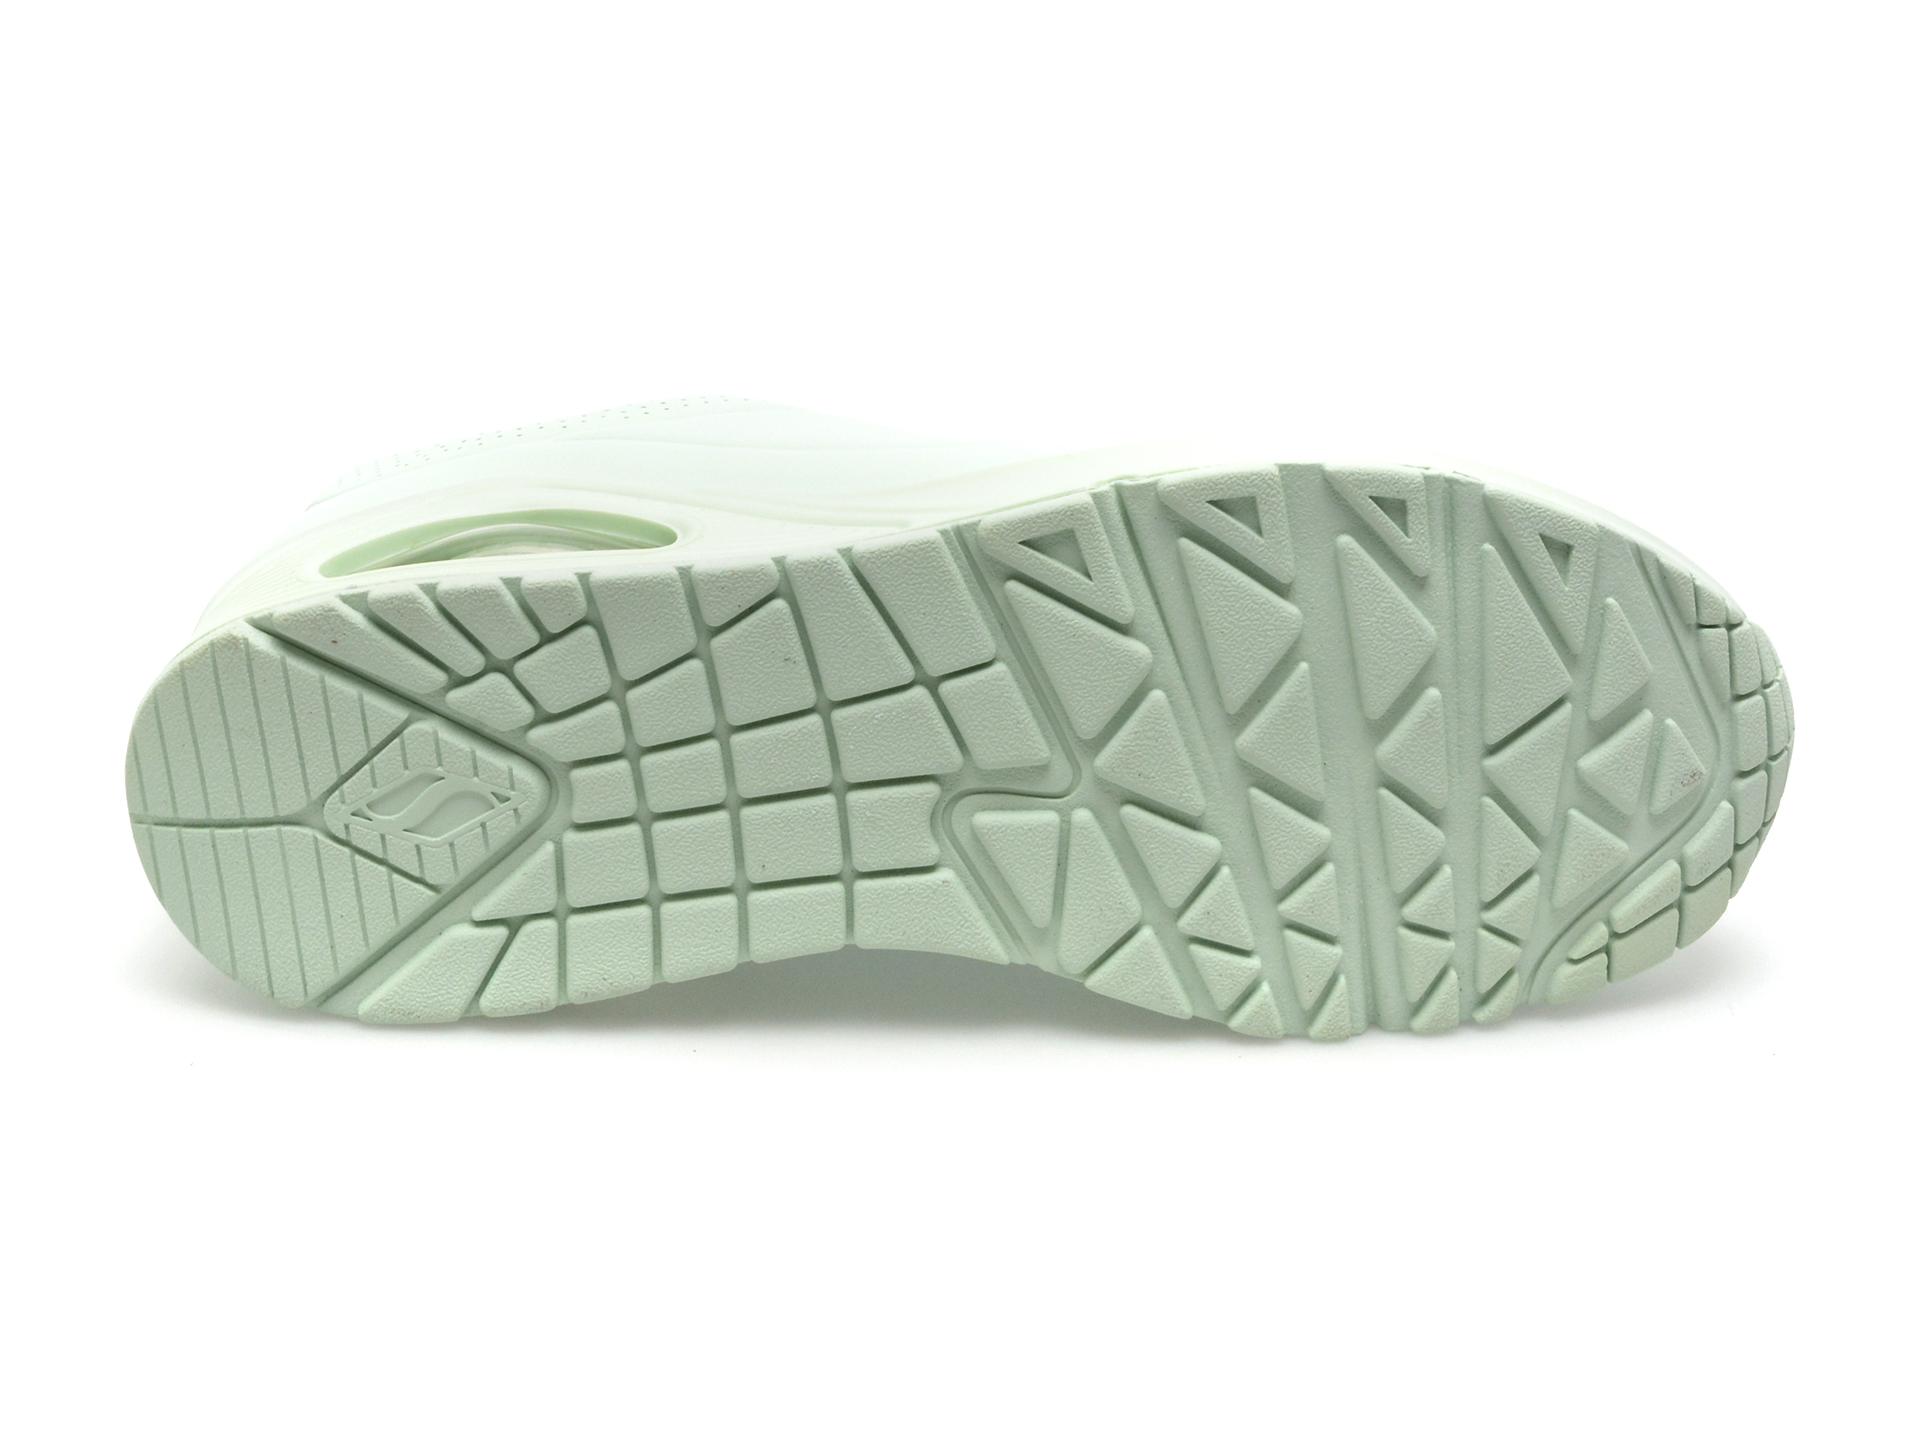 Pantofi SKECHERS verzi, UNO, din piele ecologica